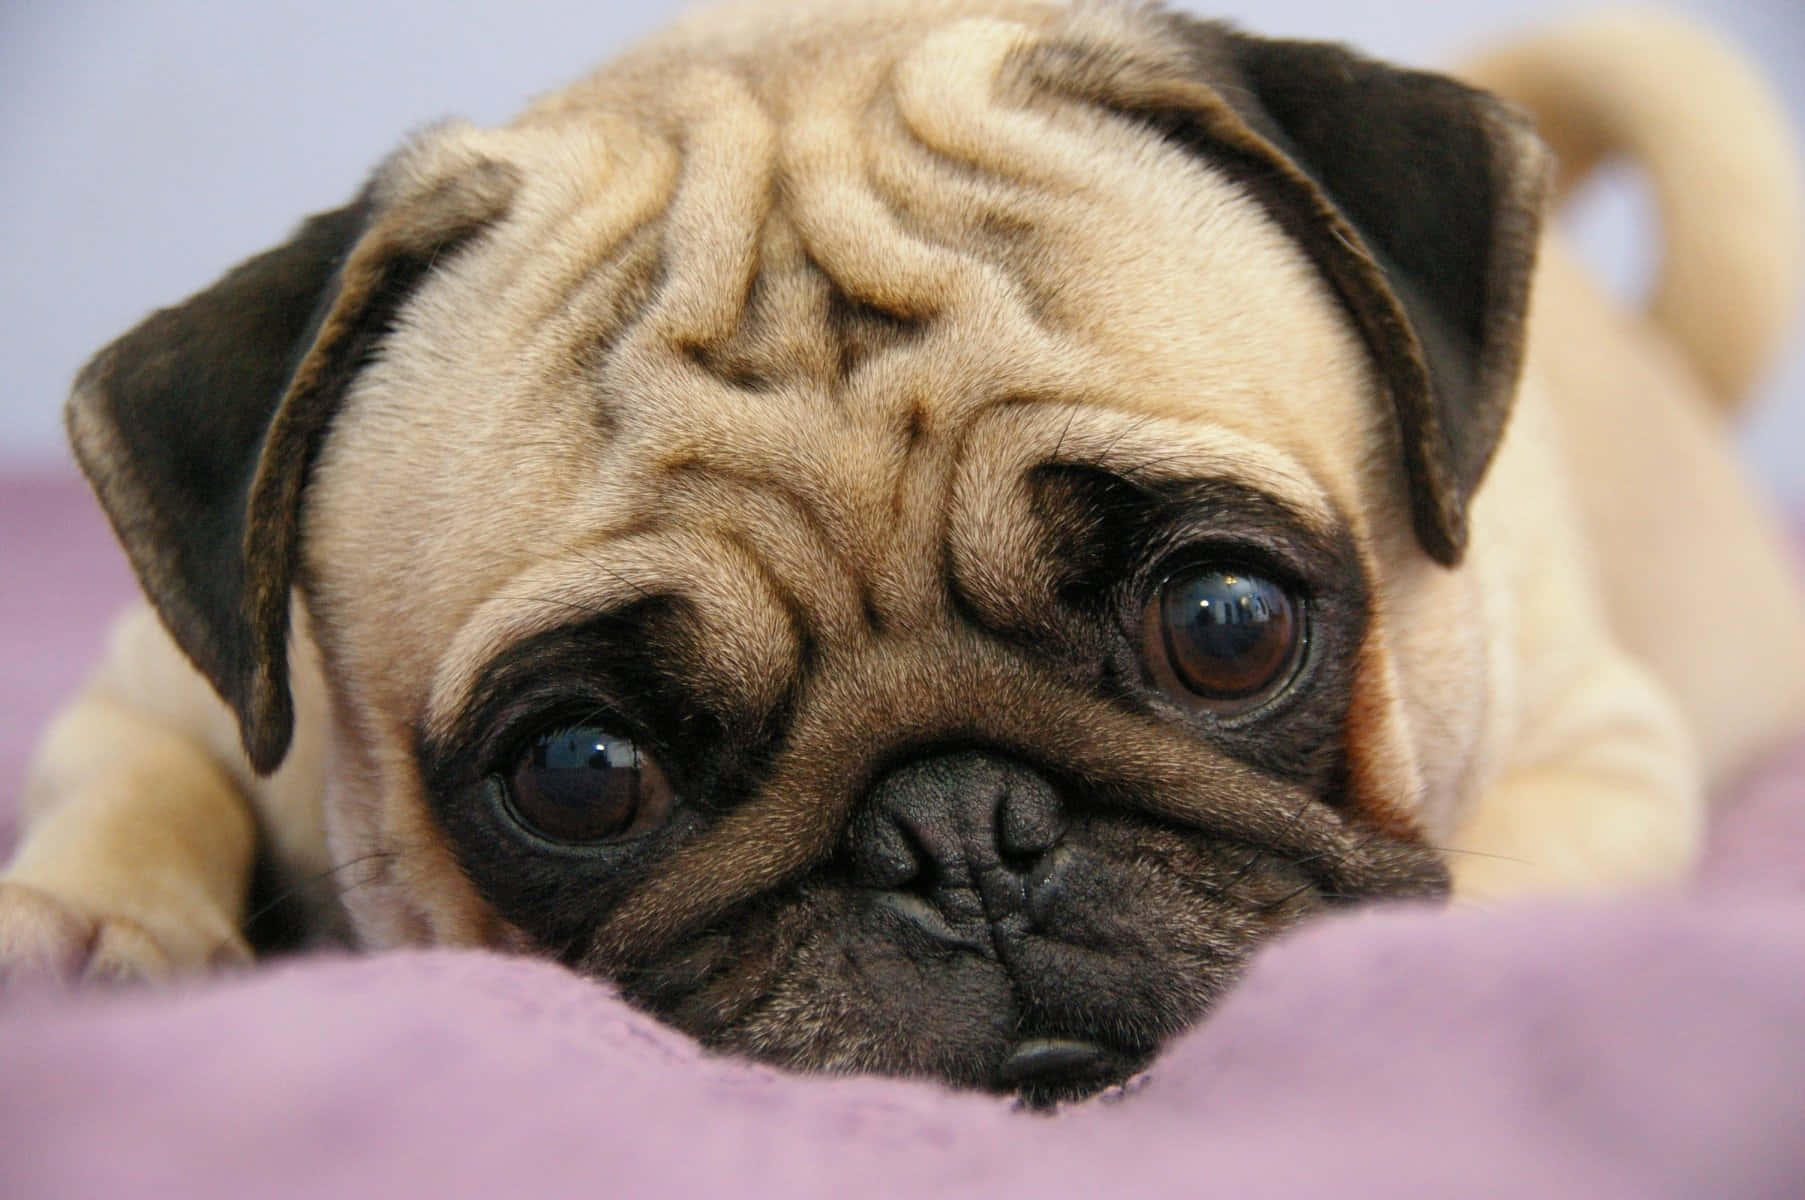 Cute Pug Close-Up Picture